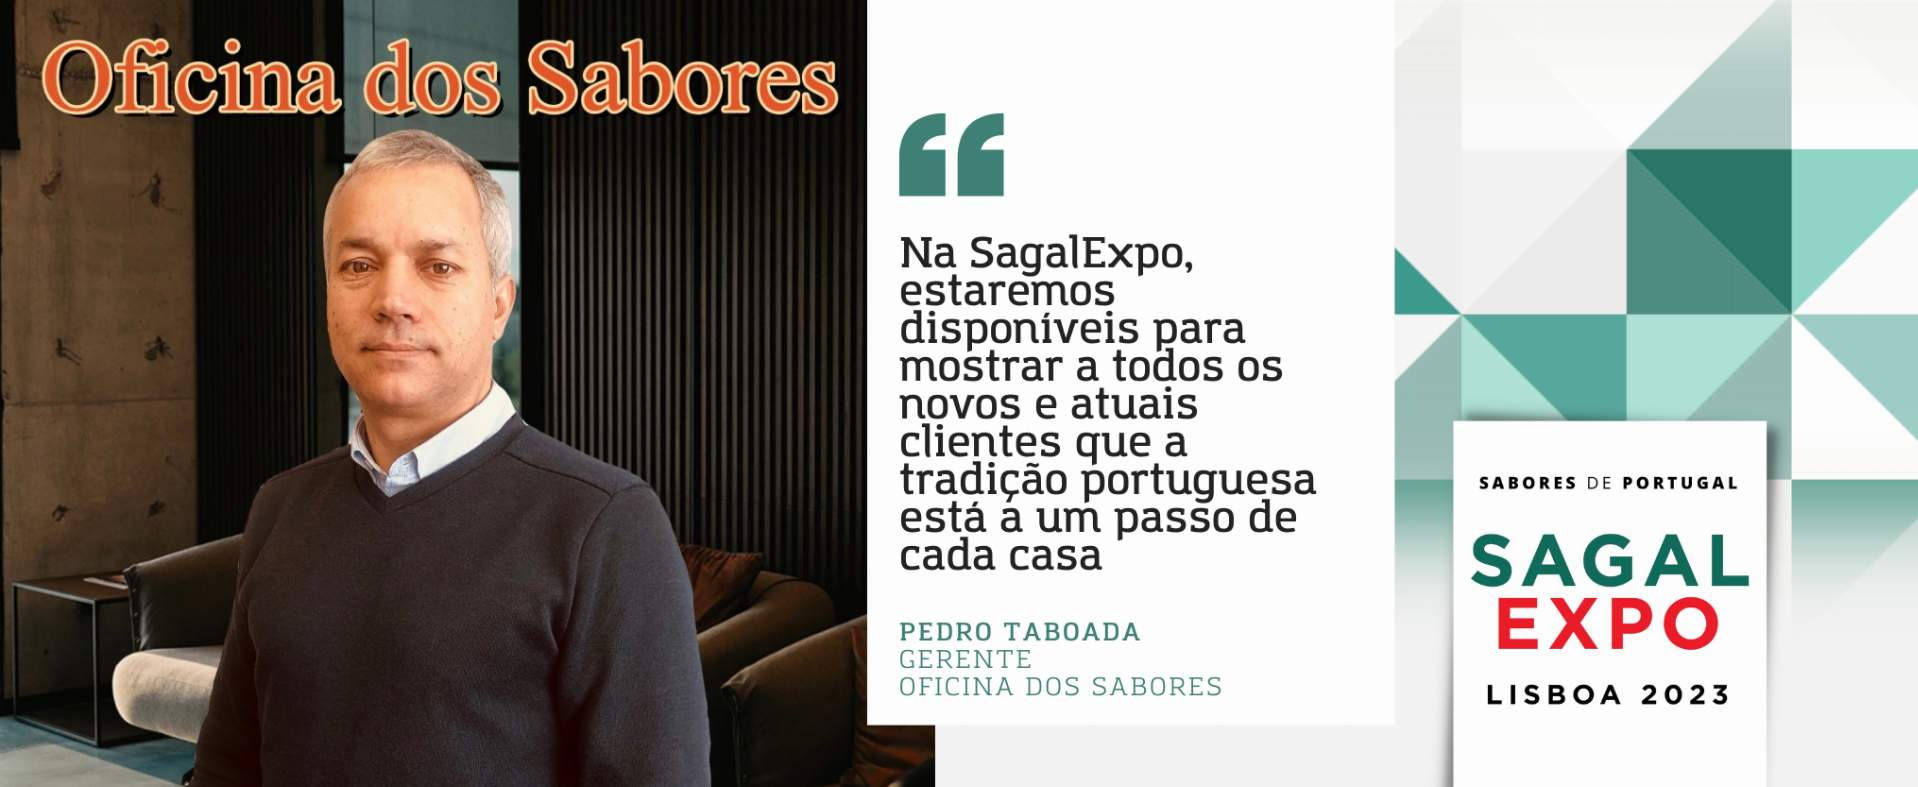 Oficina dos Sabores: “Na SagalExpo, estaremos disponíveis para mostrar a todos os novos e atuais clientes que a tradição portuguesa está a um passo de cada casa”